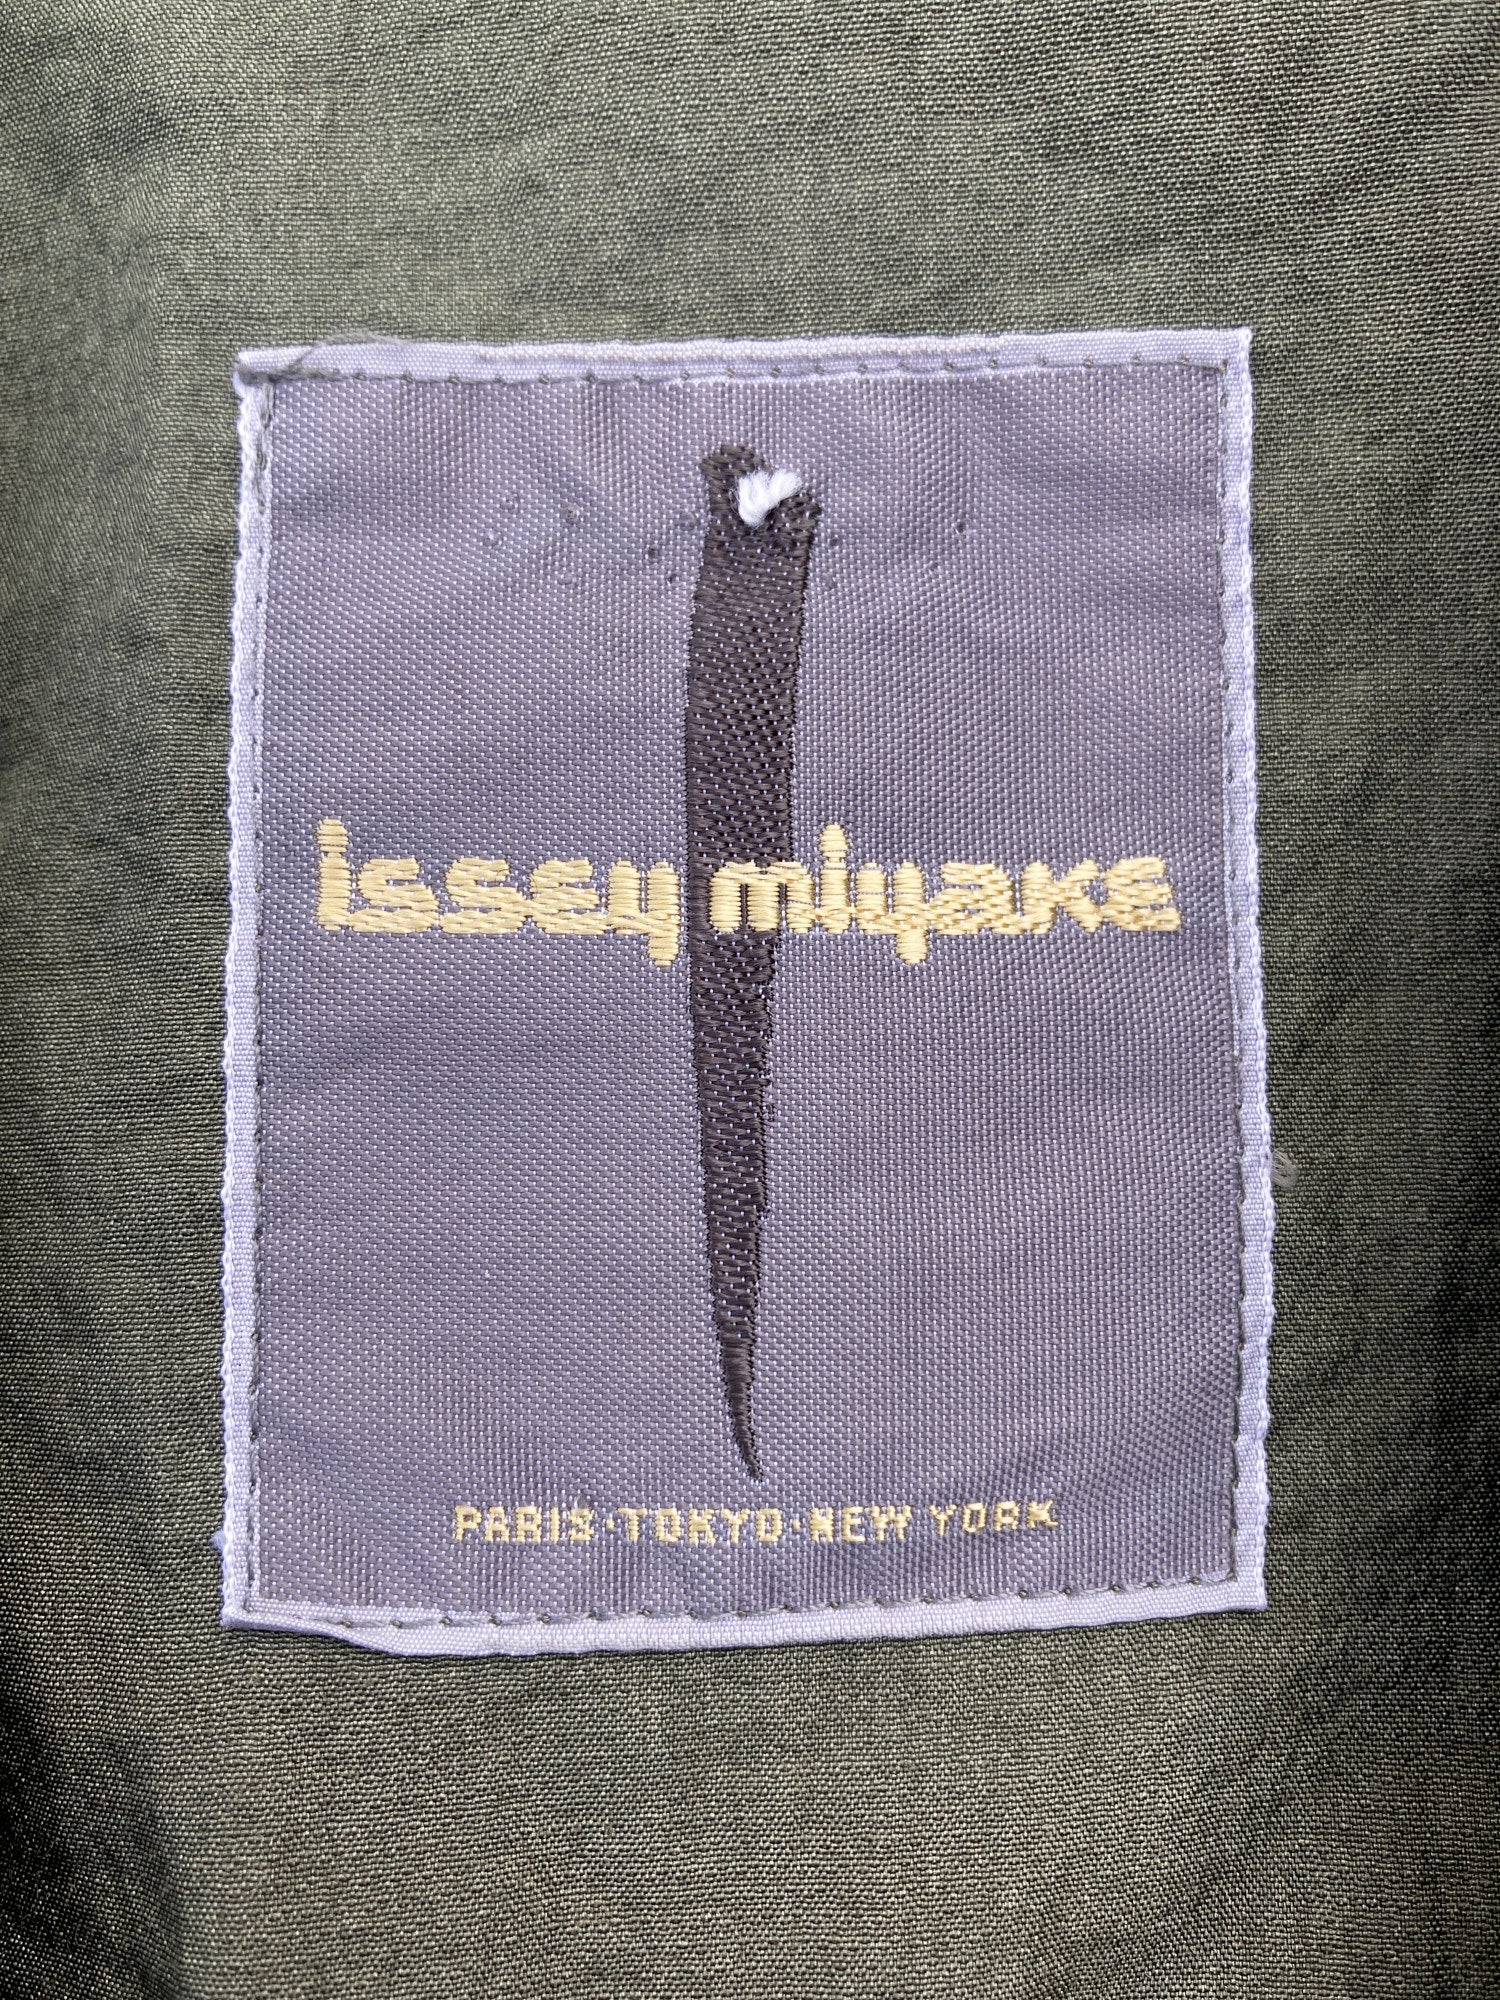 Issey Miyake 1980s khaki cotton nylon oversized rectangle coat - size M